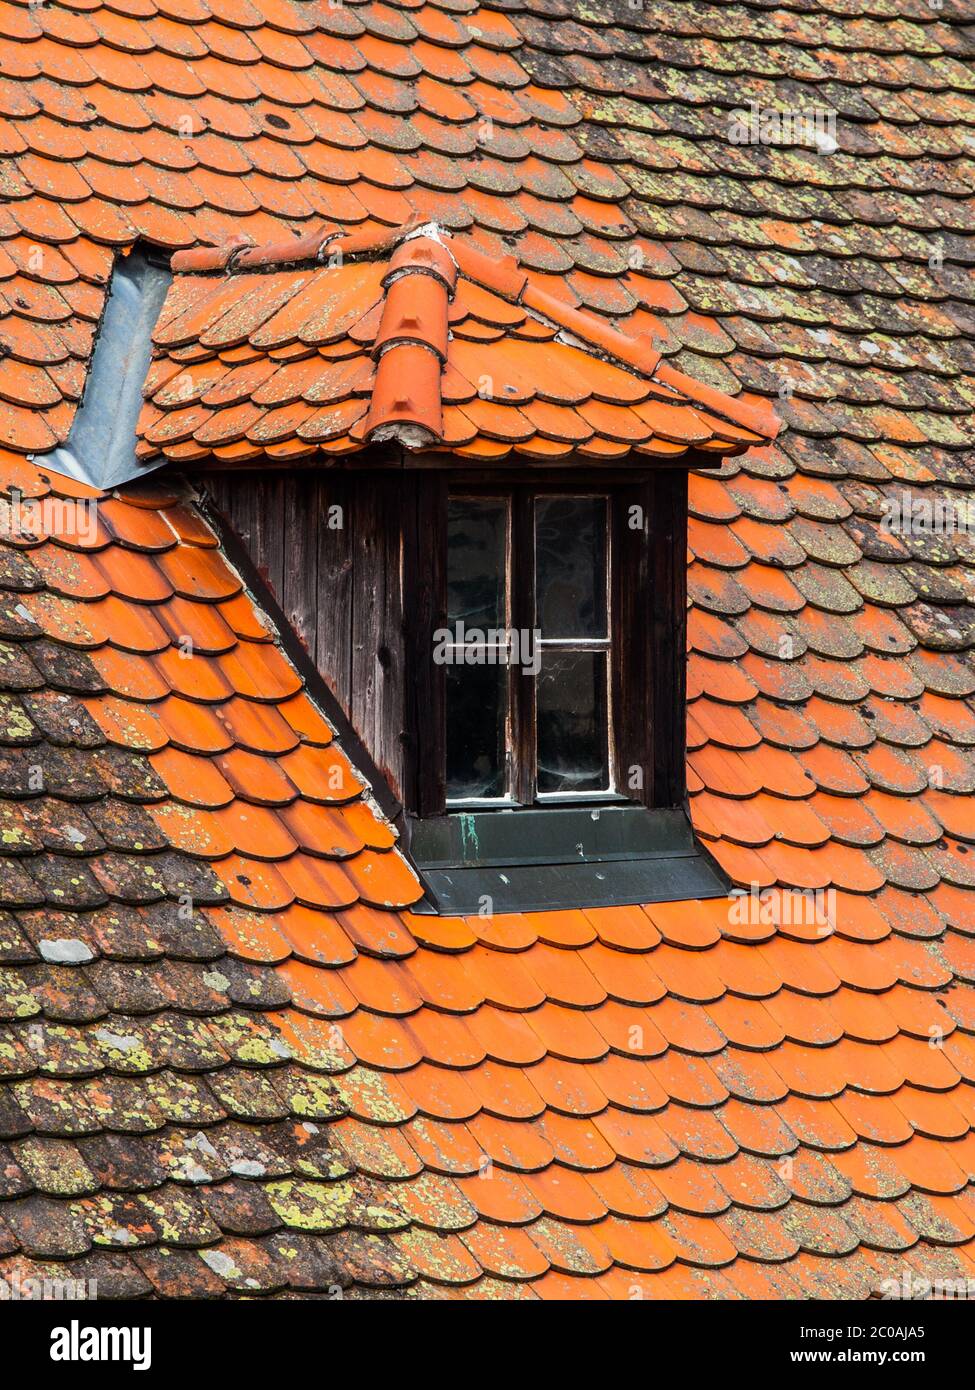 Old orange roof with retro dormer window Stock Photo